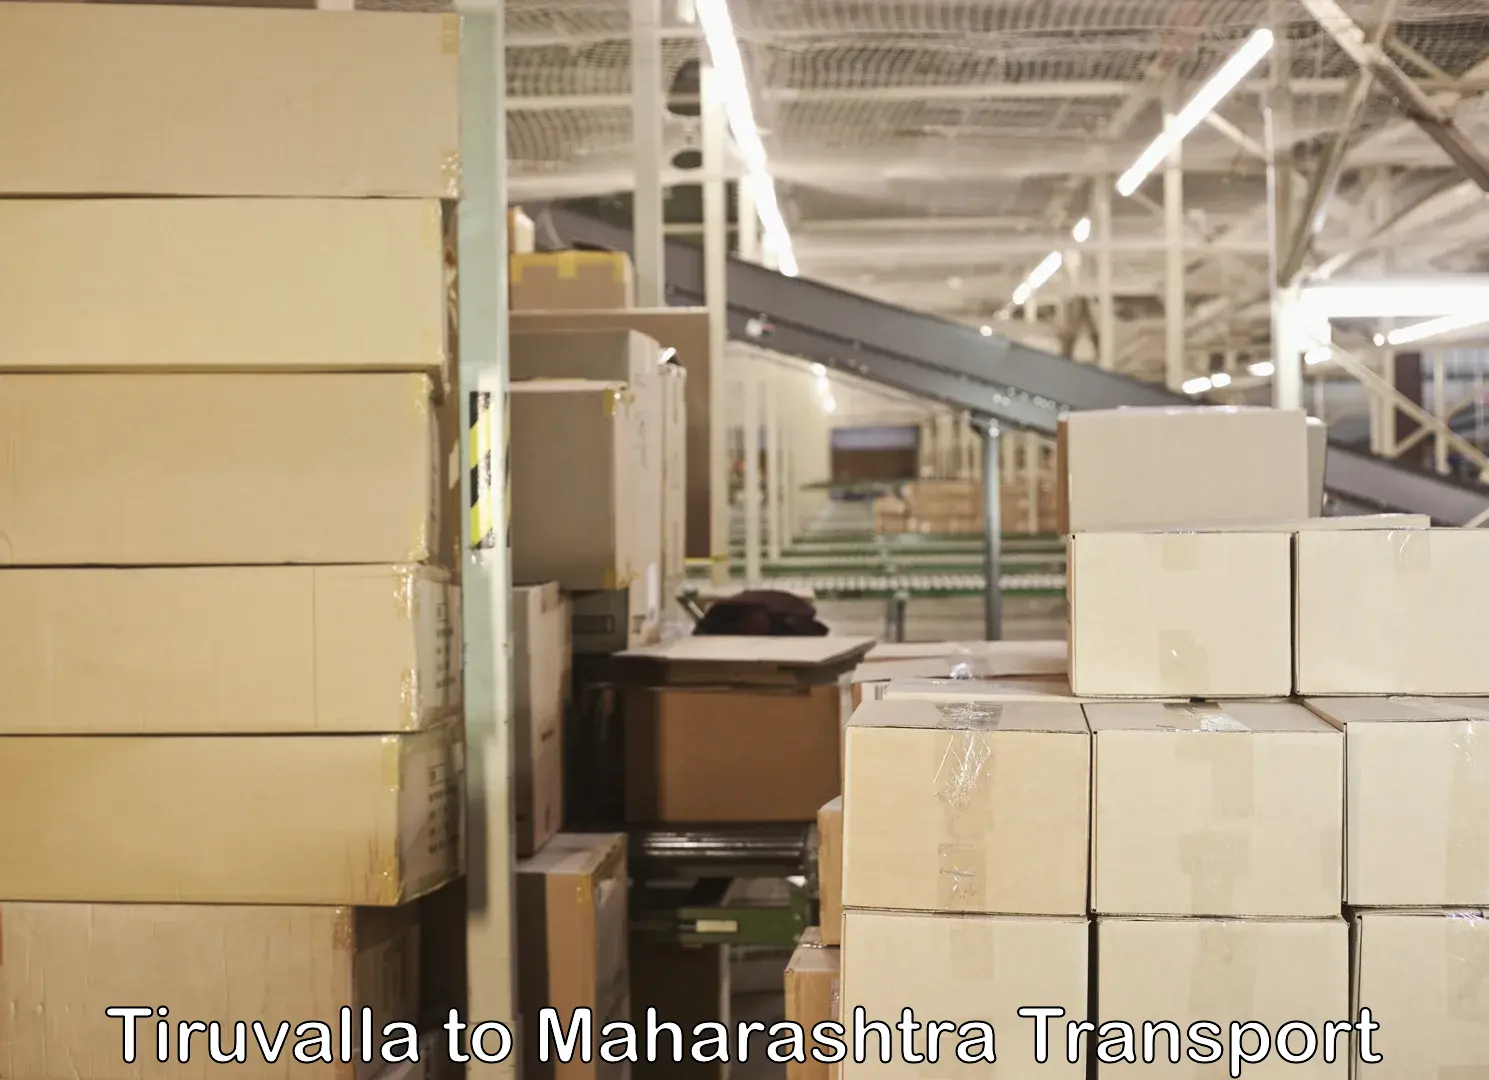 Daily transport service Tiruvalla to Maharashtra